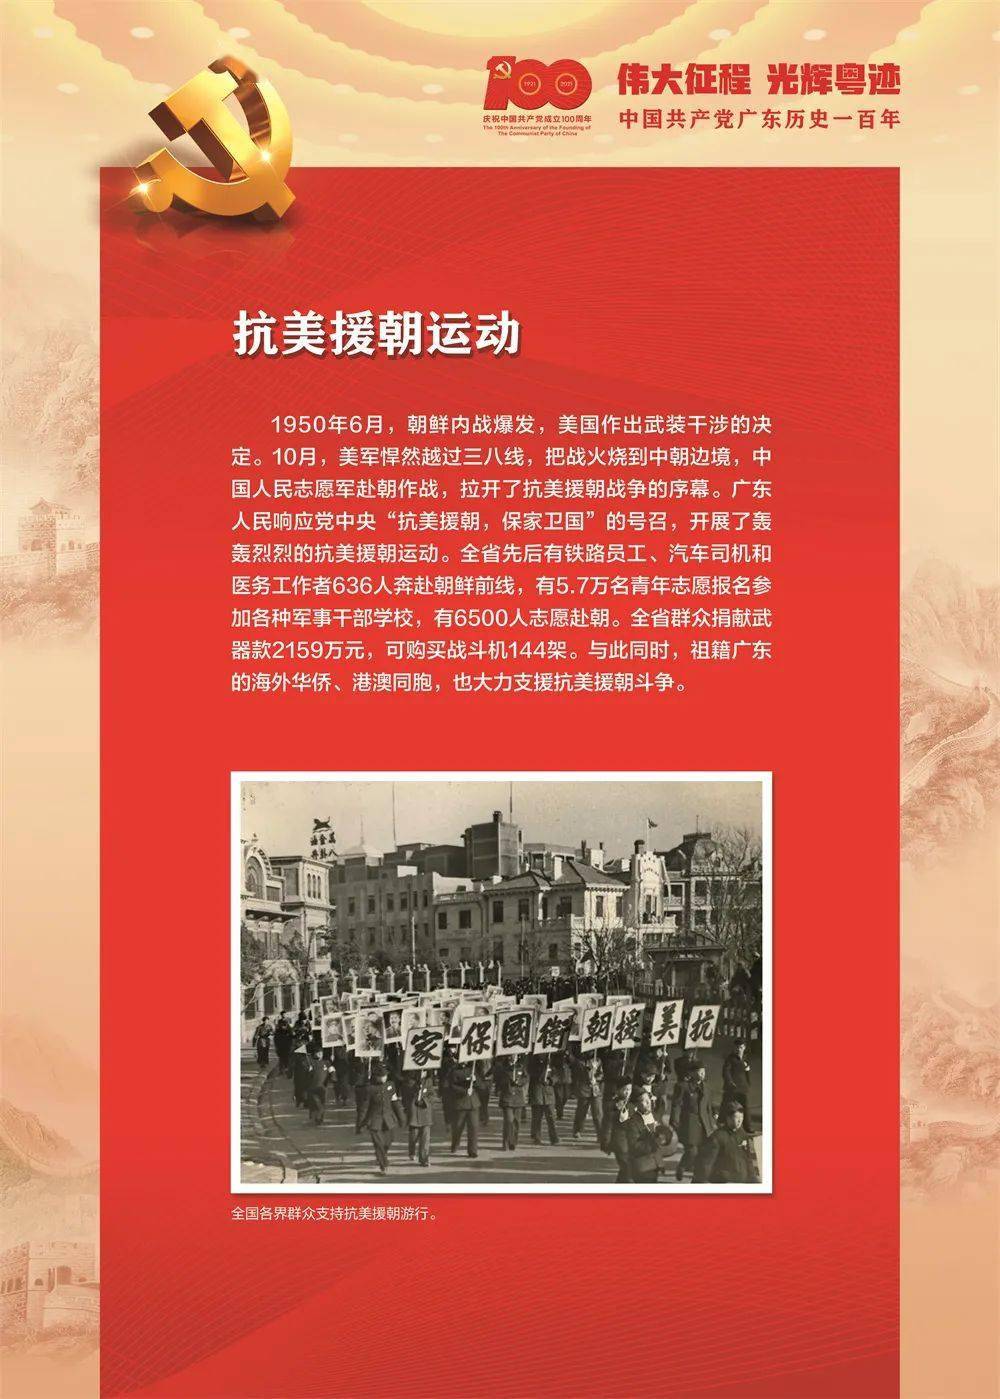 伟大征程光辉粤迹中国共产党广东历史一百年40